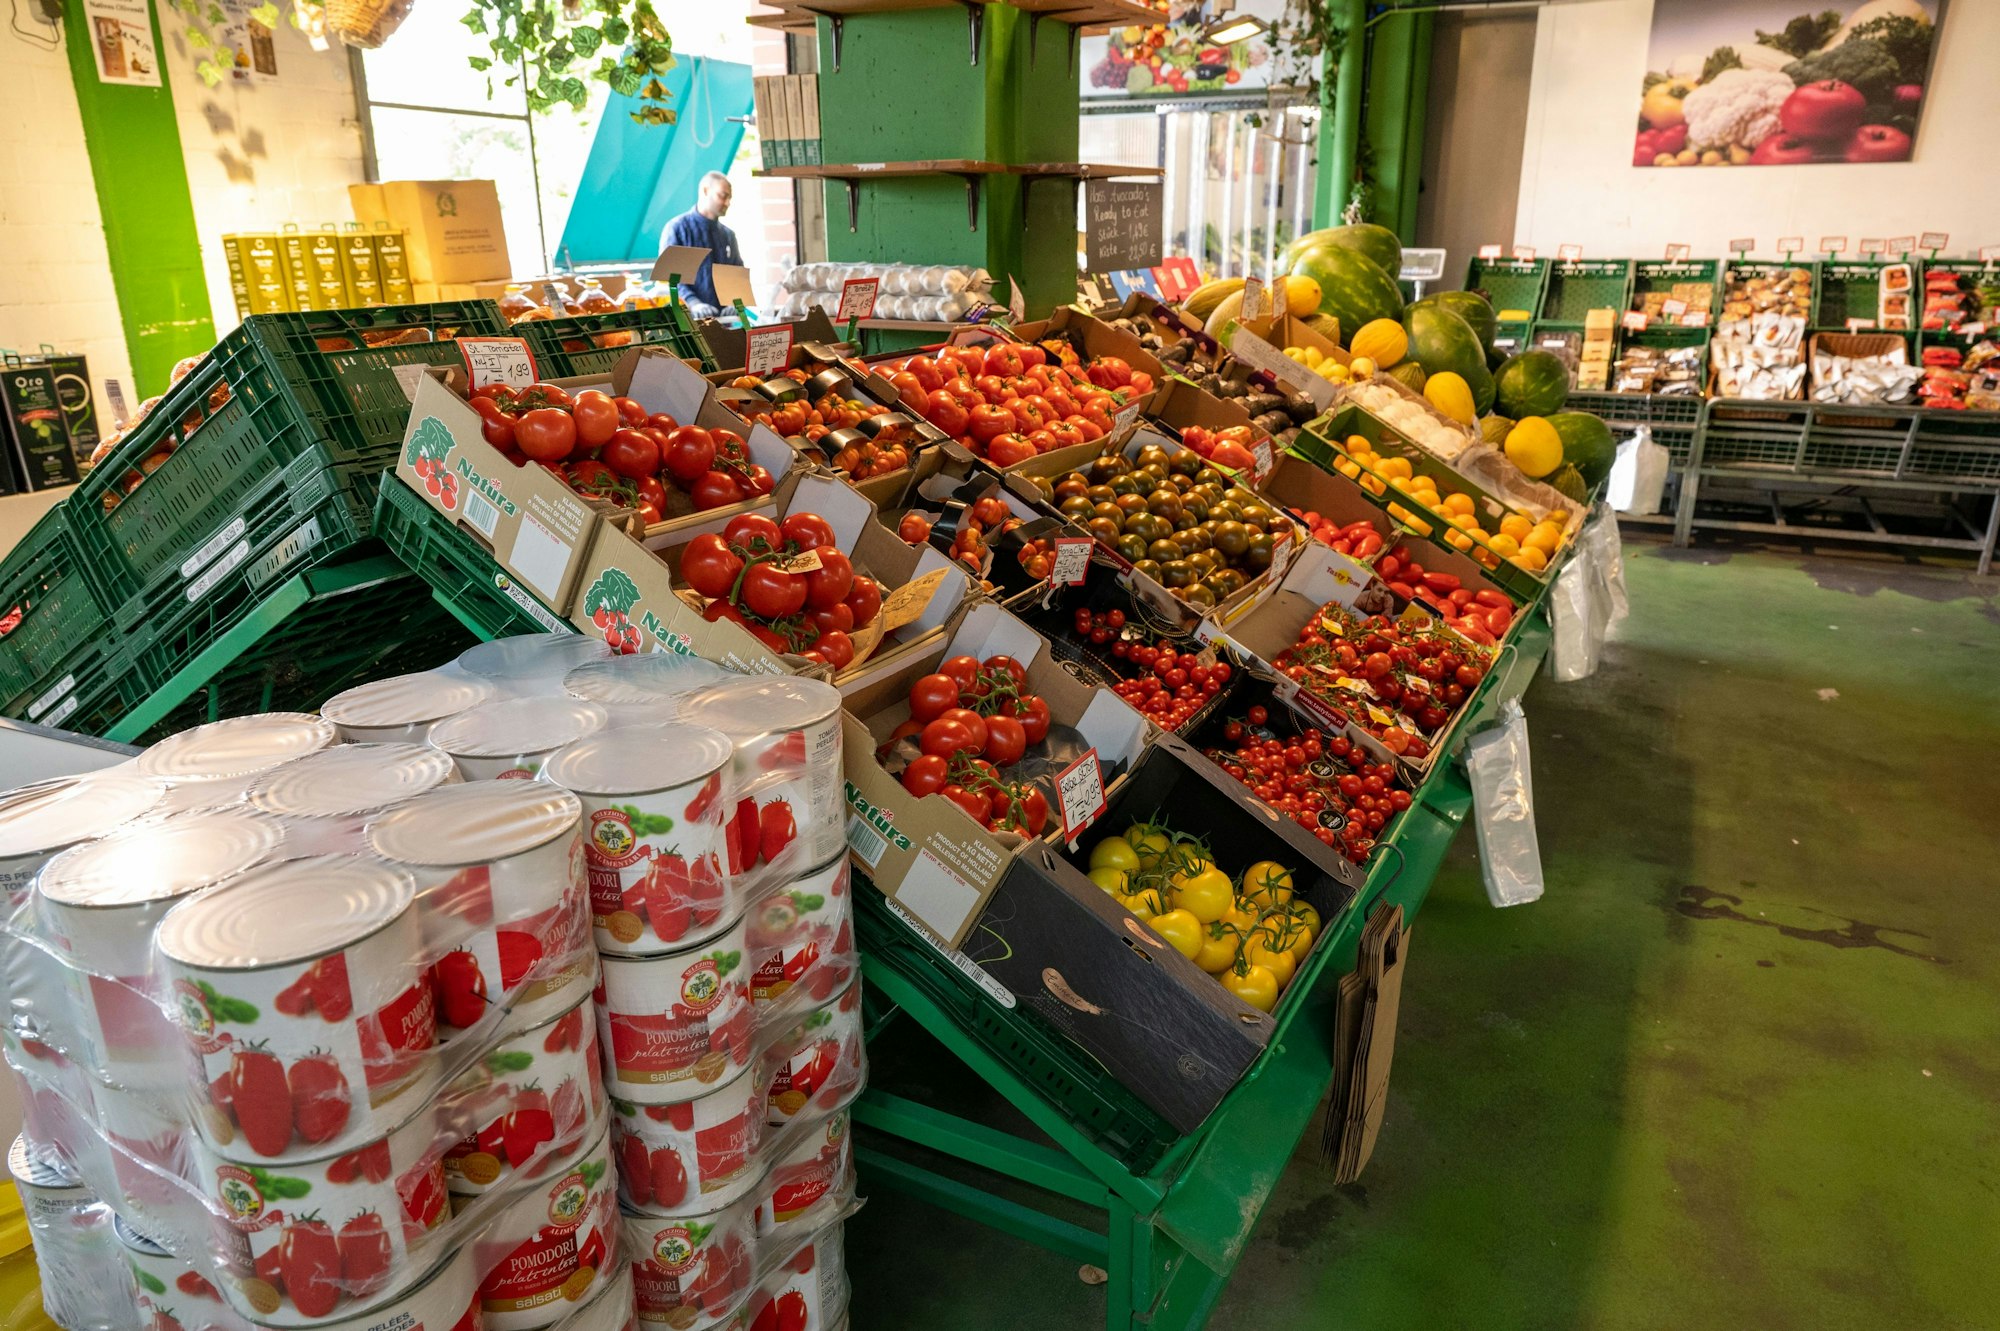 Obst und Gemüse in Kisten in einem Geschäft.